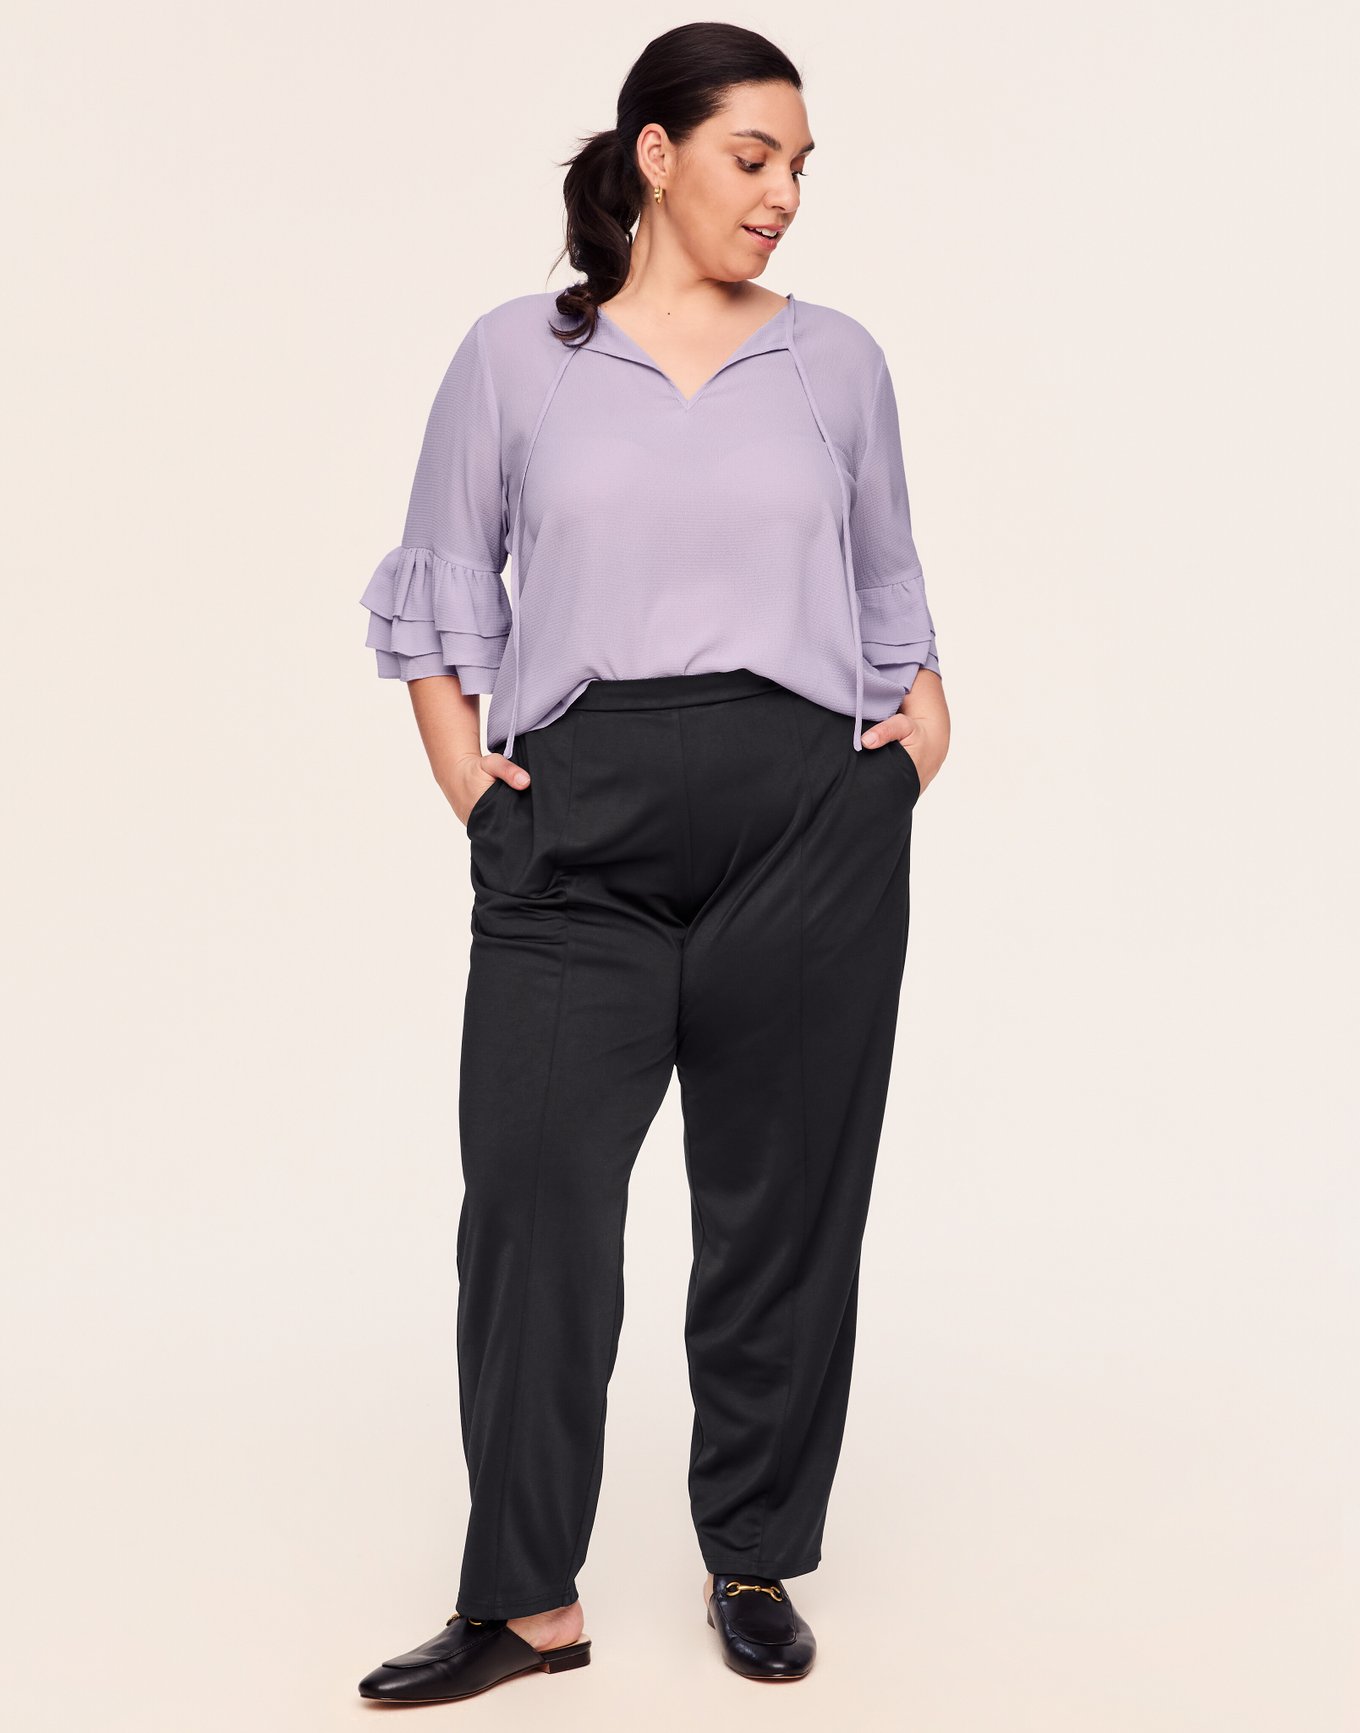 Sonoma leggings women size 3X Short